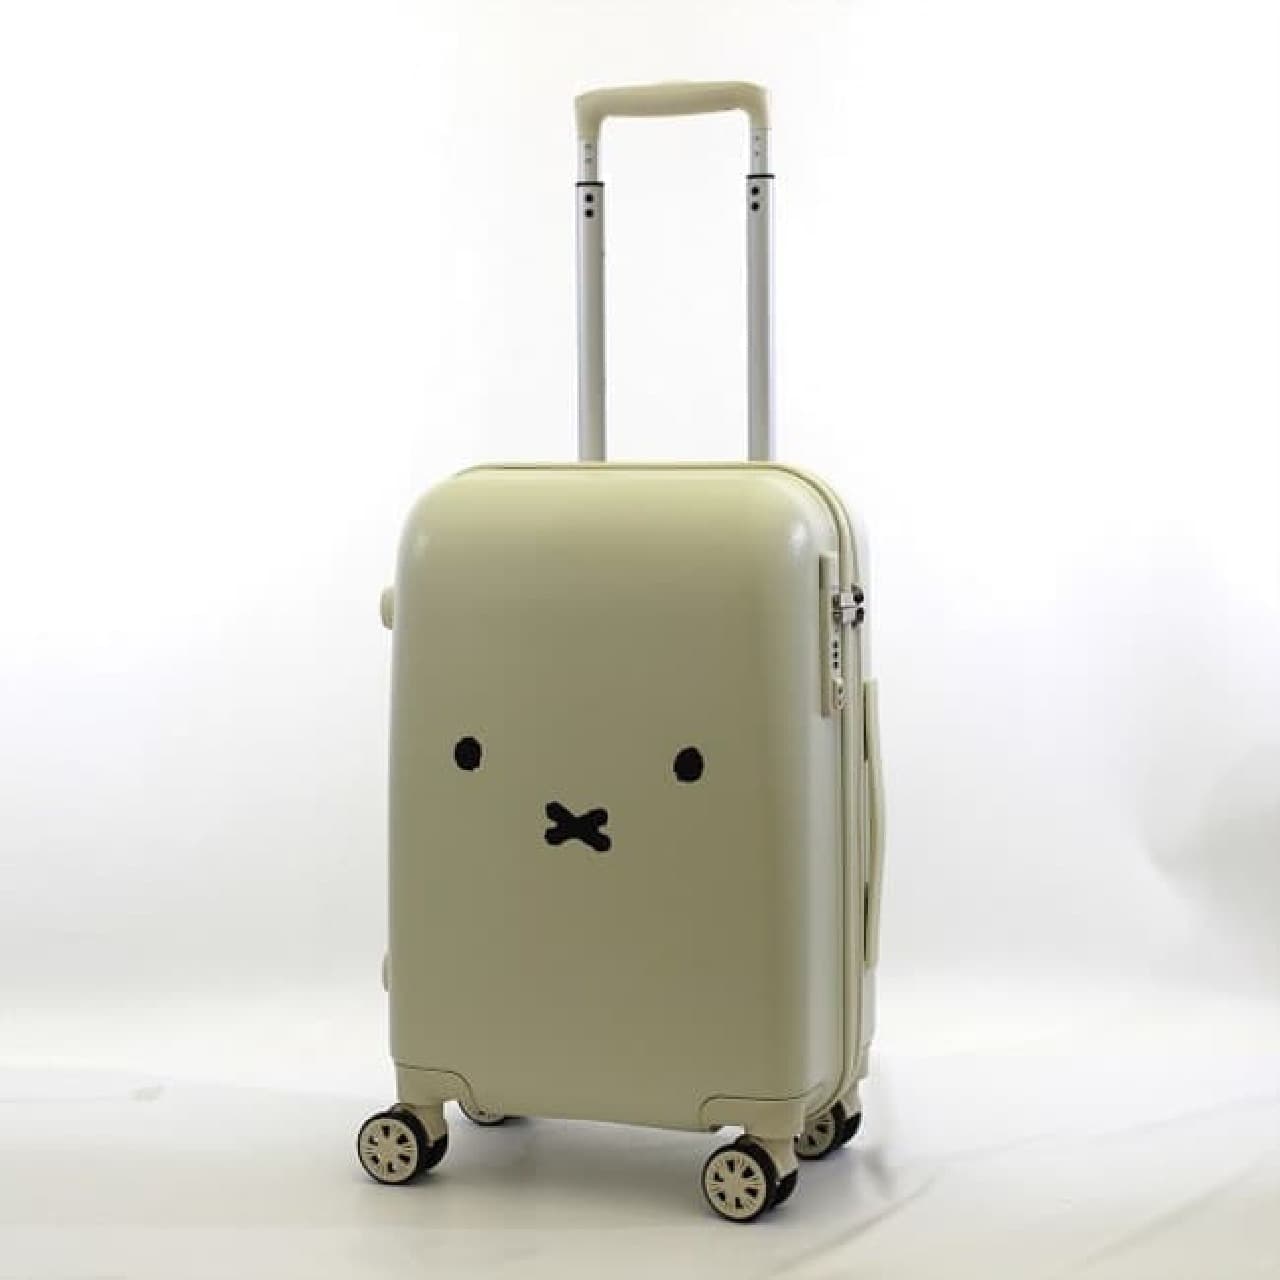 ミッフィー柄スーツケースがヴィレヴァンに -- ファスナーも可愛い